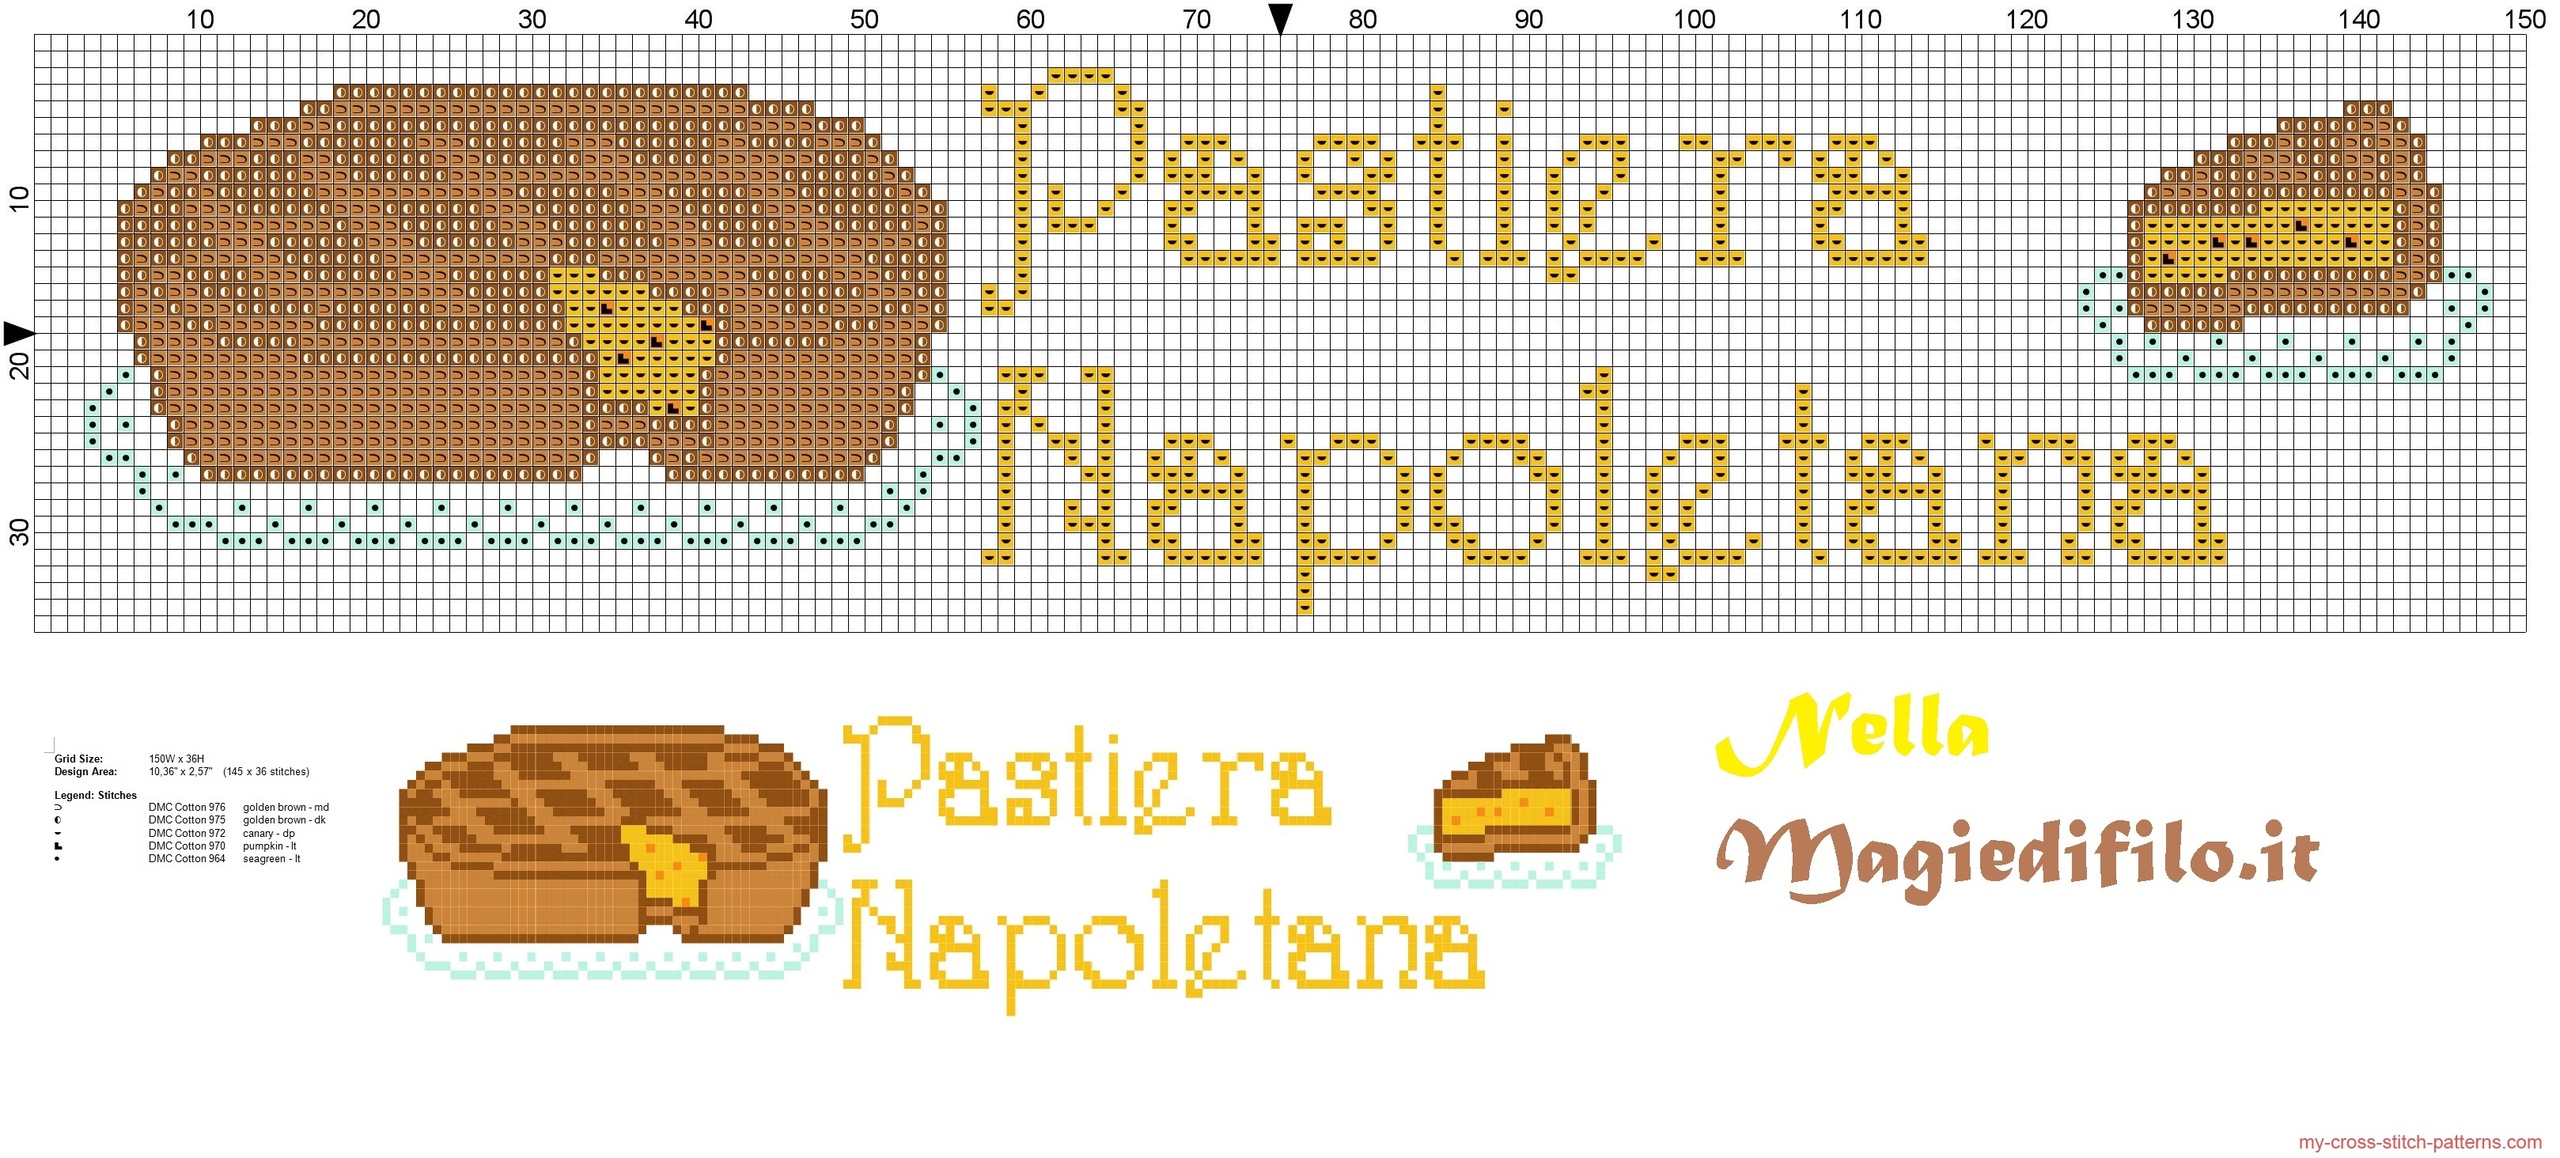 asciugapiatti_pastiera_napoletana_